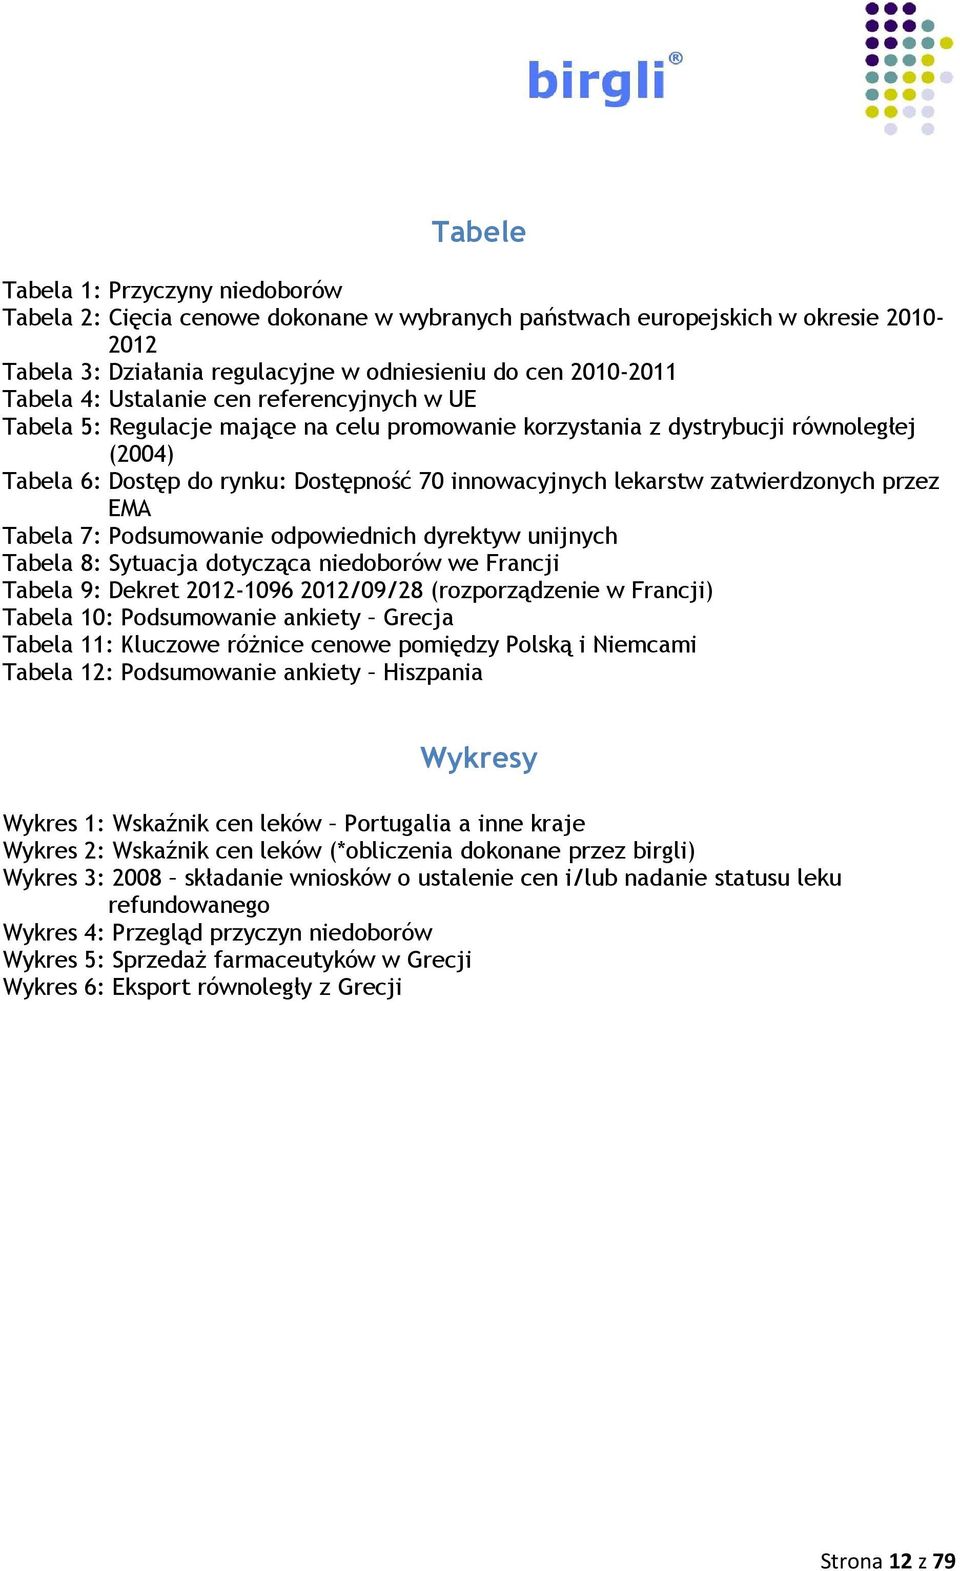 zatwierdzonych przez EMA Tabela 7: Podsumowanie odpowiednich dyrektyw unijnych Tabela 8: Sytuacja dotycząca niedoborów we Francji Tabela 9: Dekret 2012-1096 2012/09/28 (rozporządzenie w Francji)